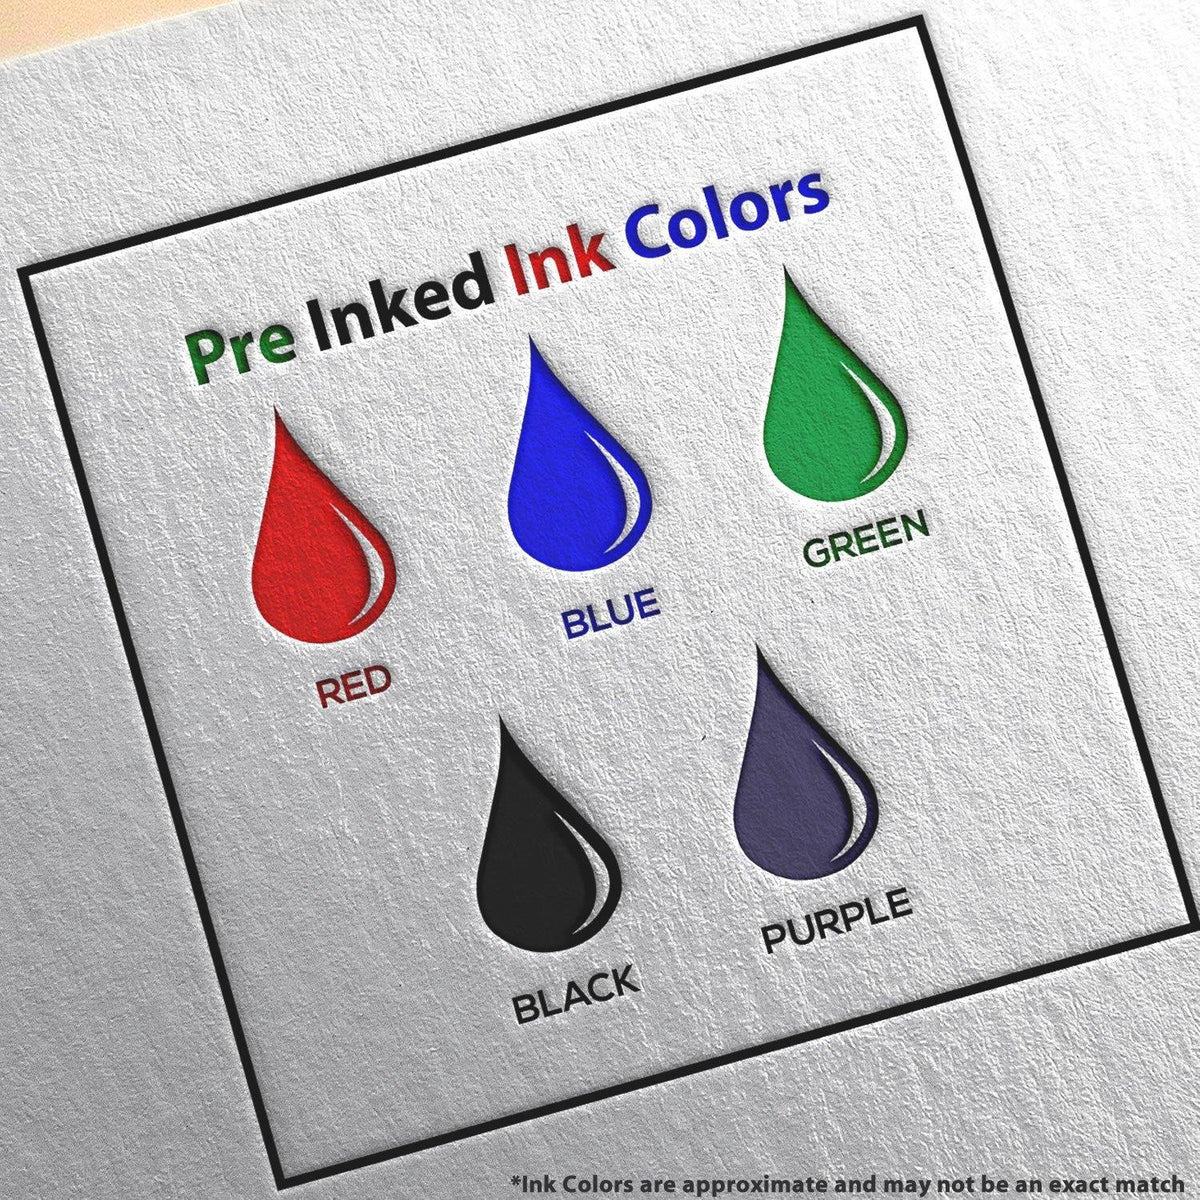 Large Pre Inked Returned Item Stamp Ink Color Options